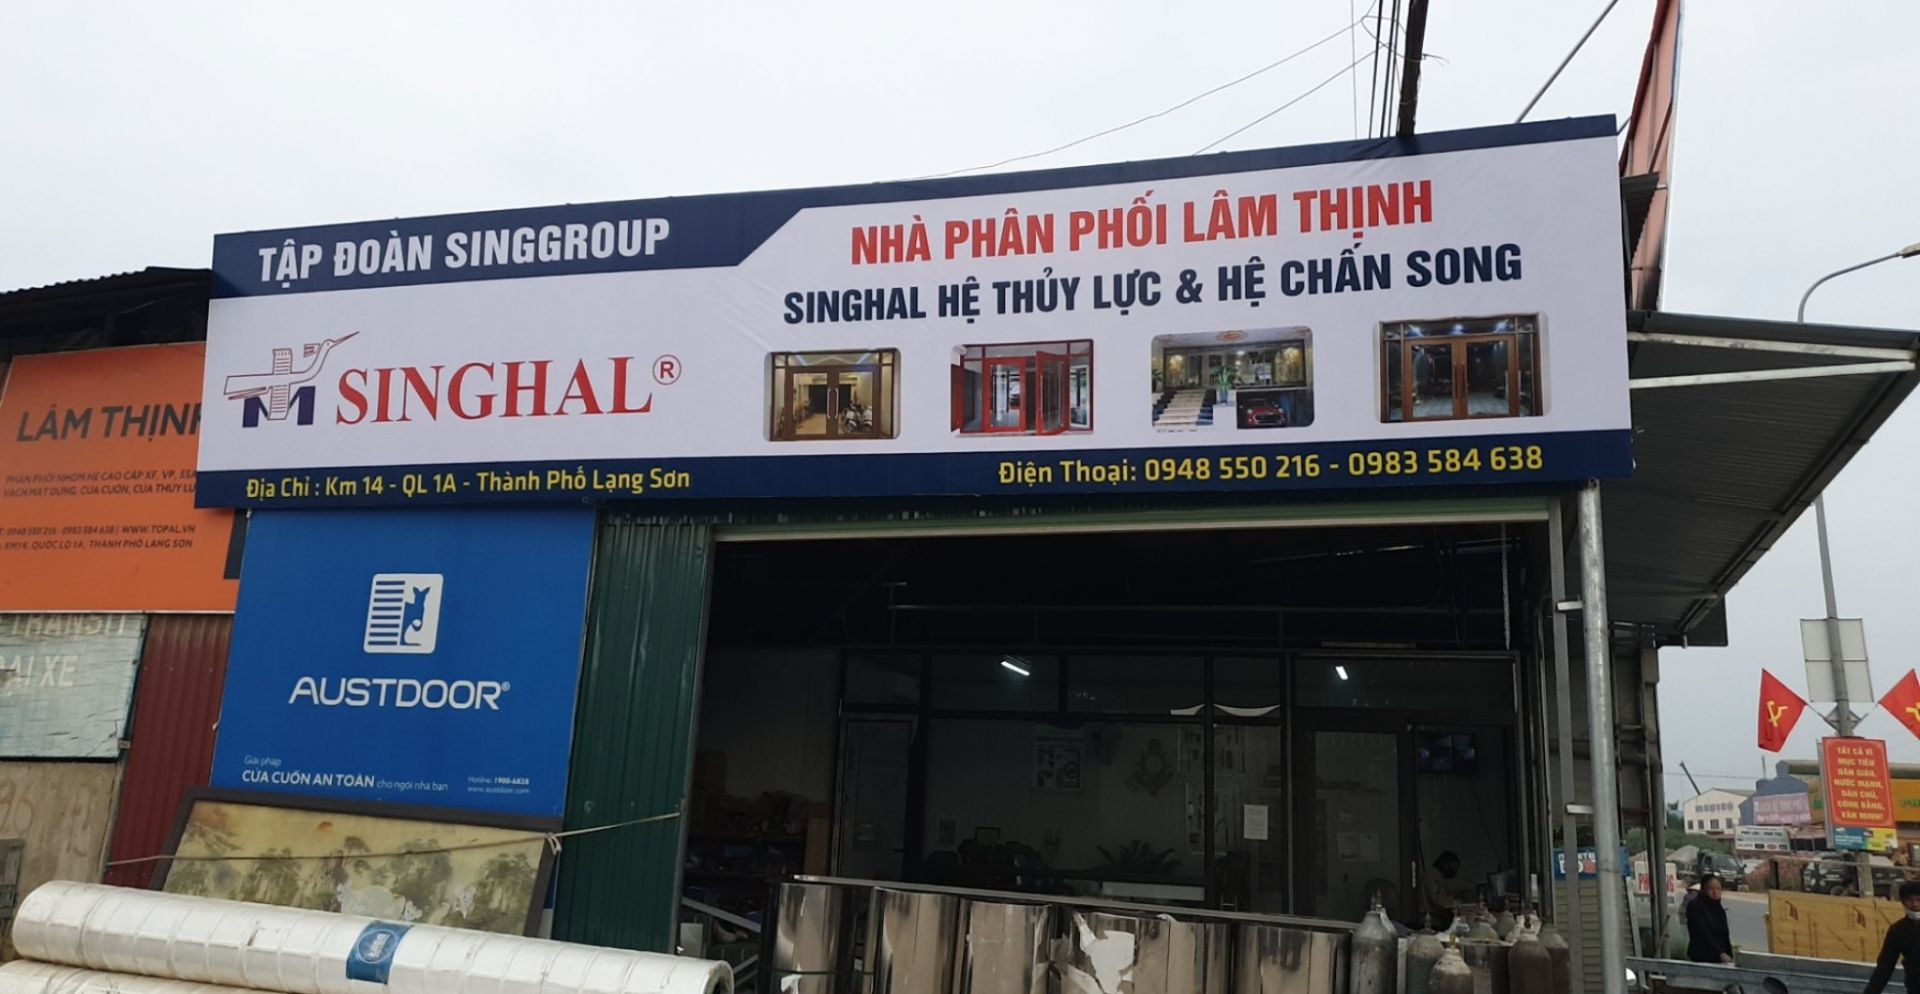 NPP lâm thịnh - singhal Lạng Sơn